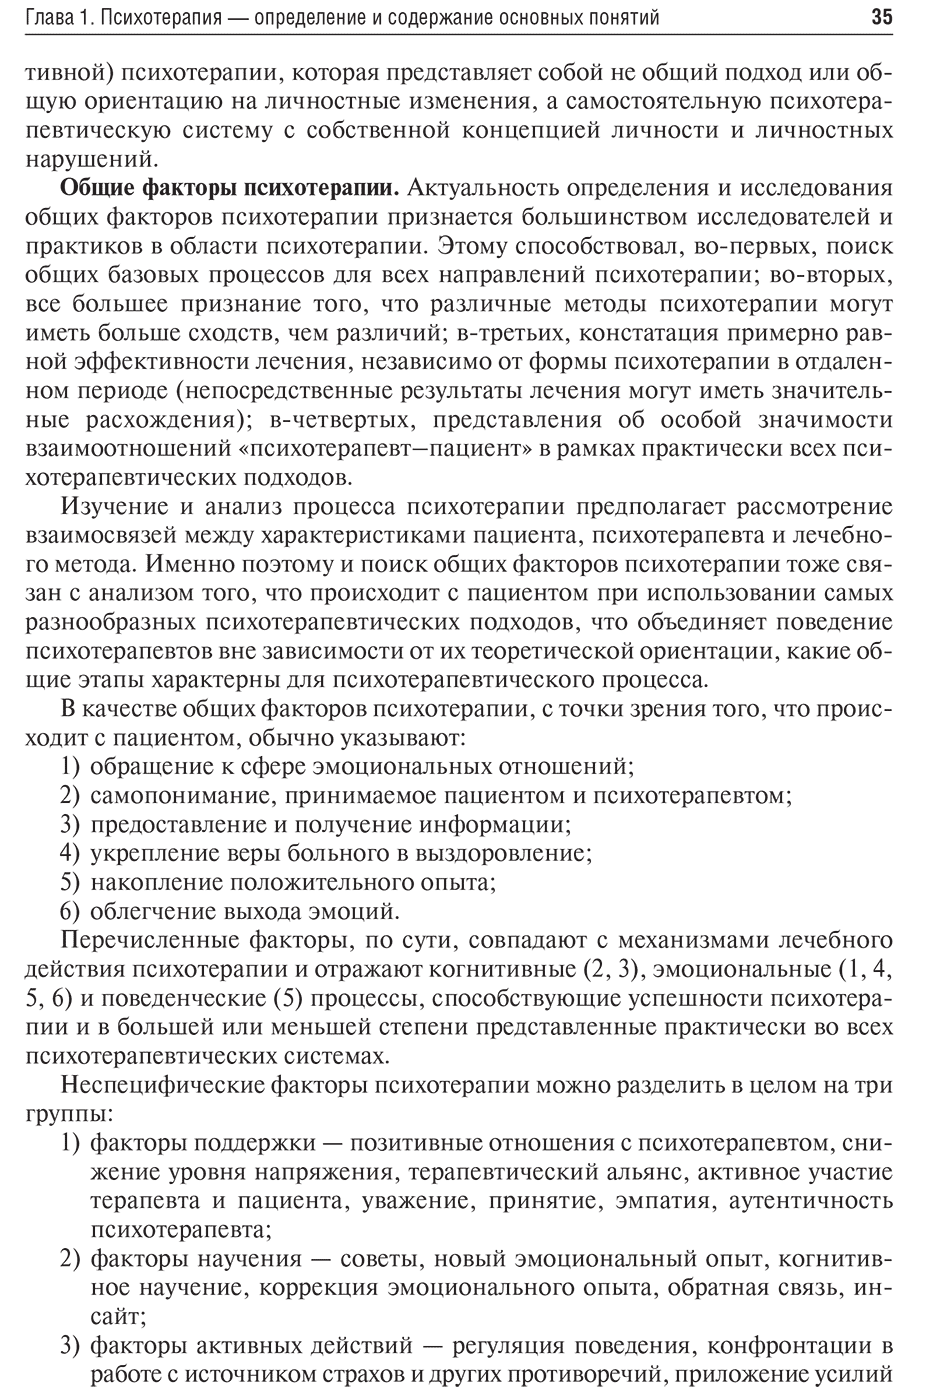 Пример страницы из книги "Психотерапия: учебник" - Васильева А. В.